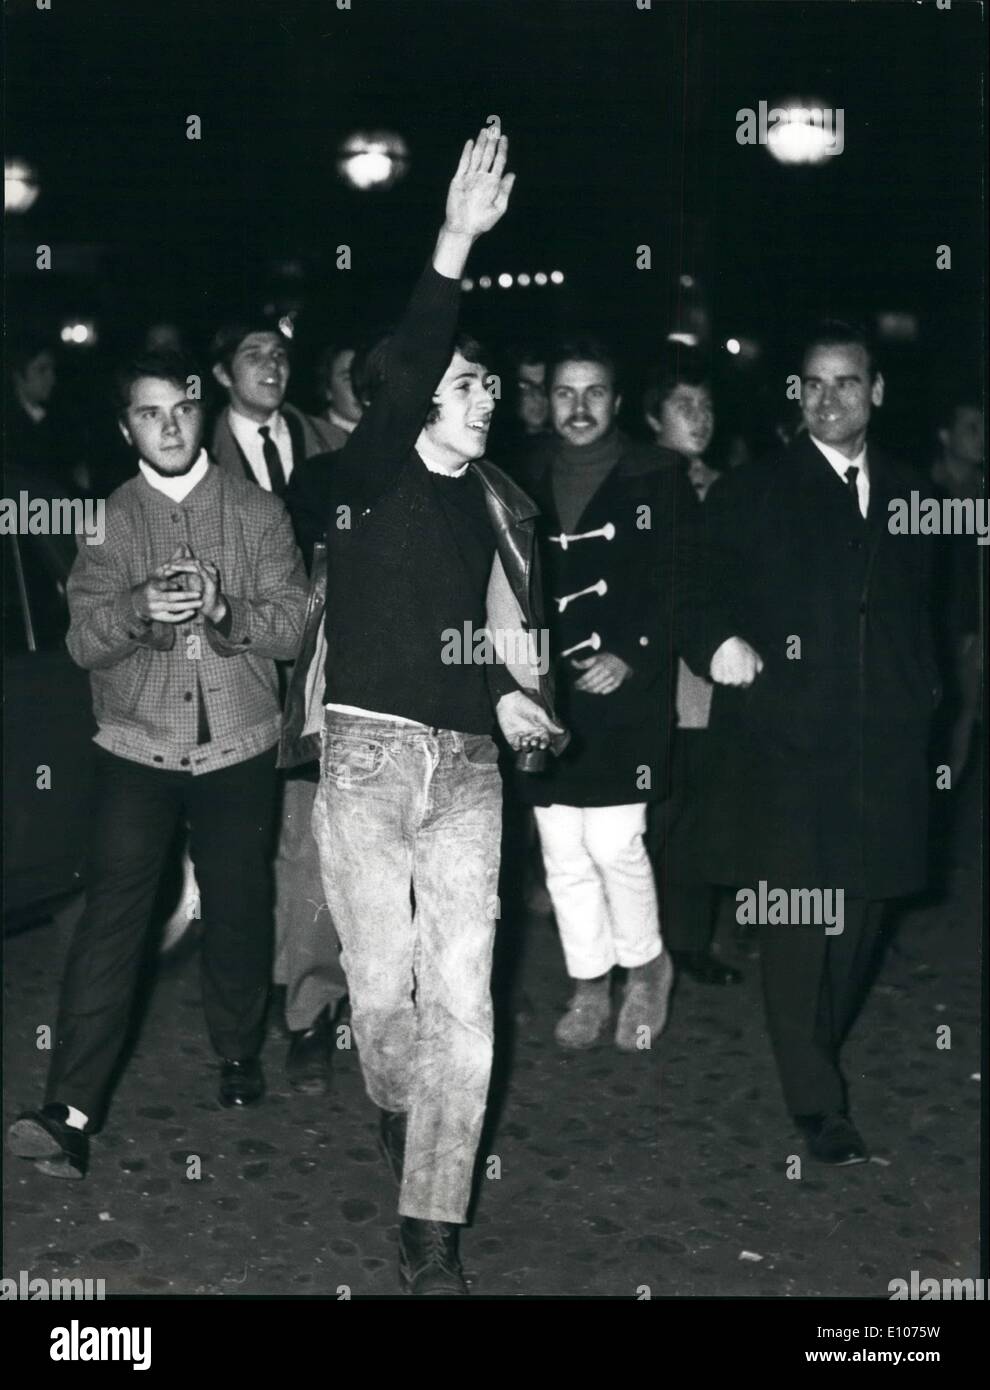 10 févr. 02, 1970 - Les jeunes amoureux, Paris Metro Express, Boissy St-Leger Banque D'Images